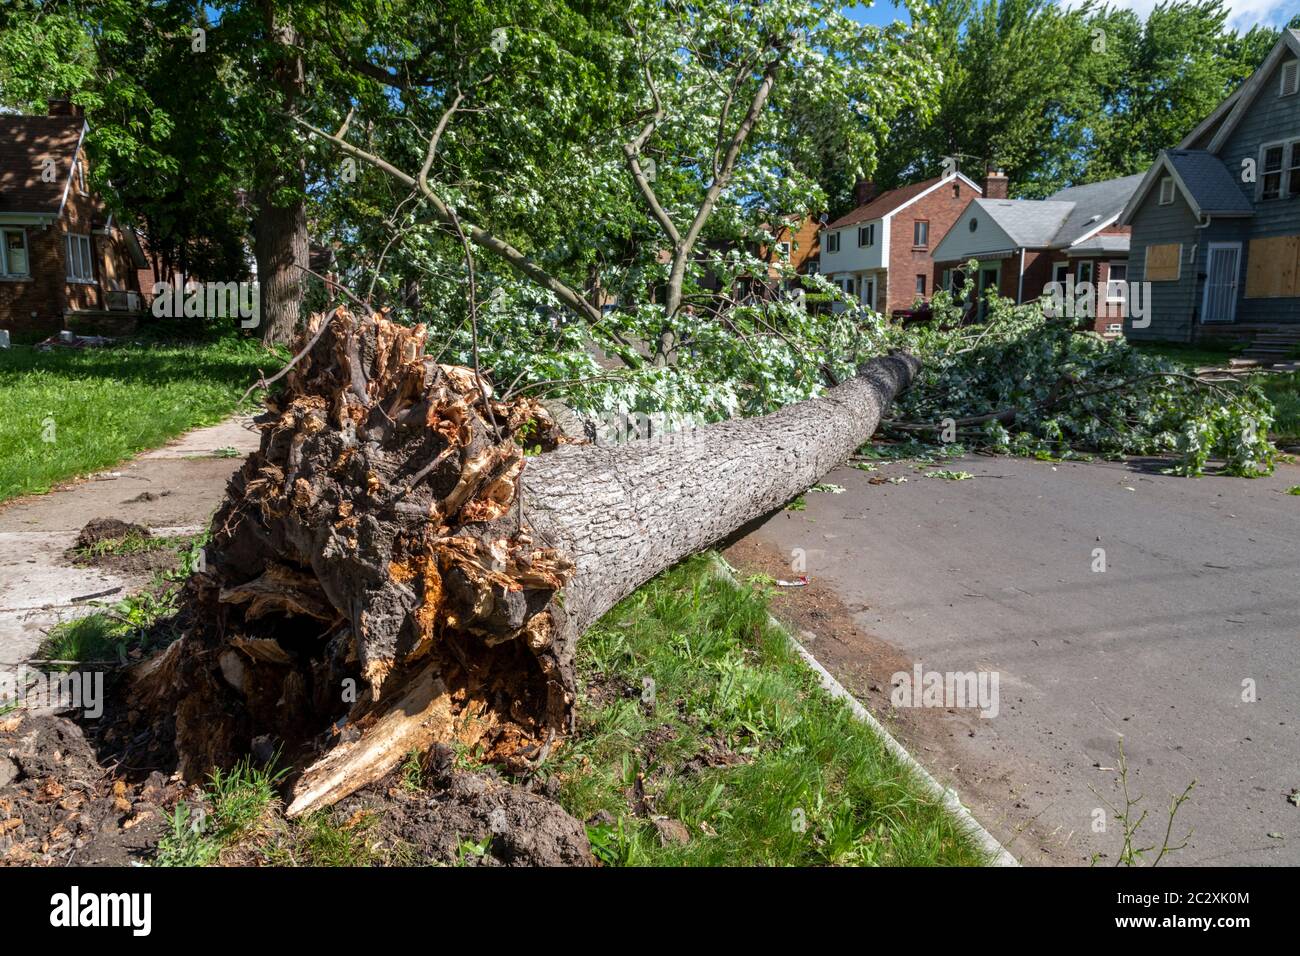 Detroit, Michigan - i resti della tempesta tropicale Cristobal hanno abbassato grandi alberi e causato interruzioni di corrente sul lato est di Detroit. Foto Stock